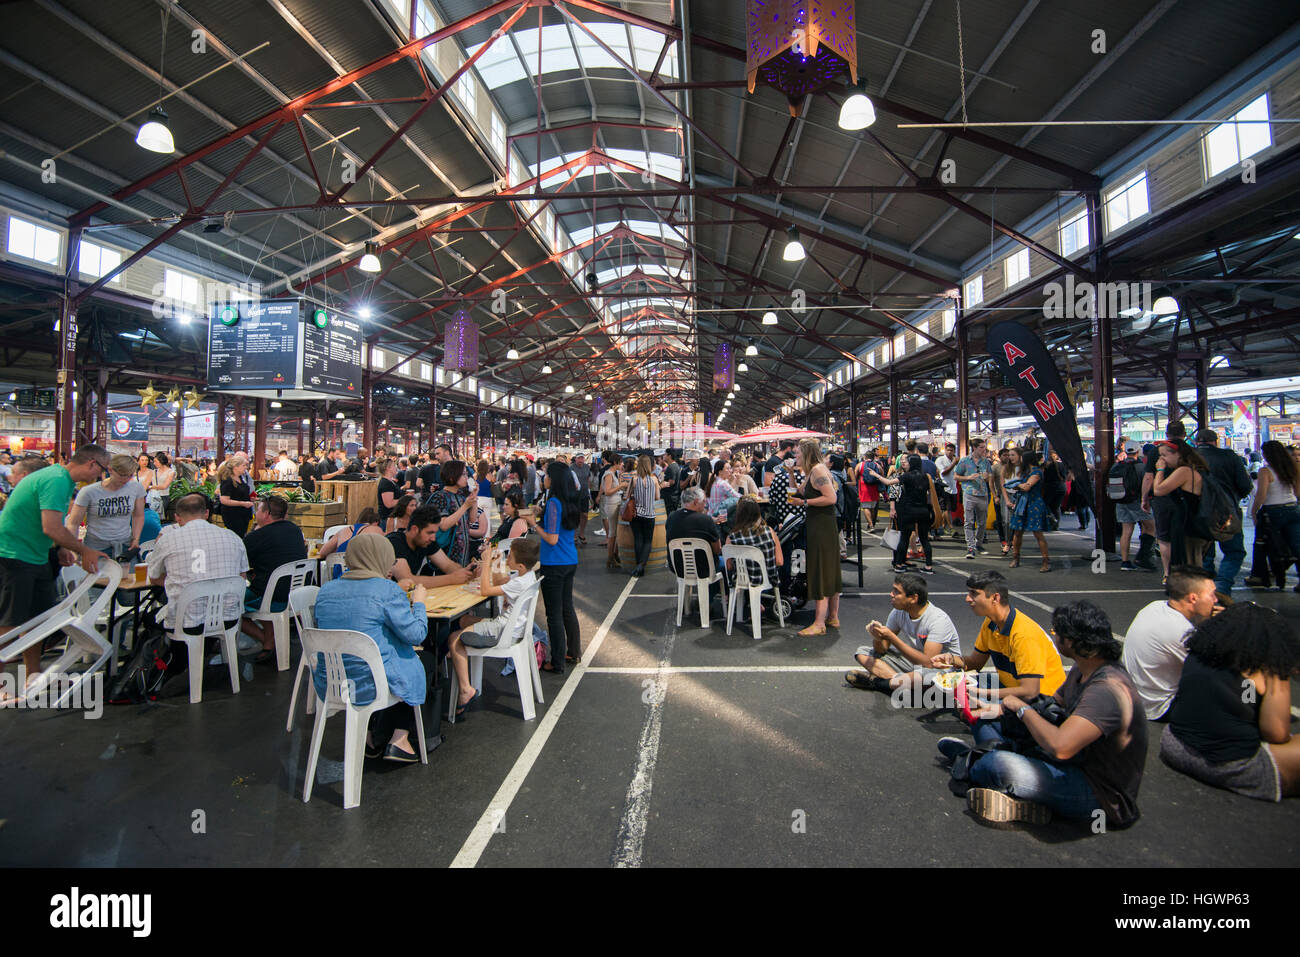 Le marché de nuit d'été de la reine Victoria, Victoria Melbourne Australie Banque D'Images